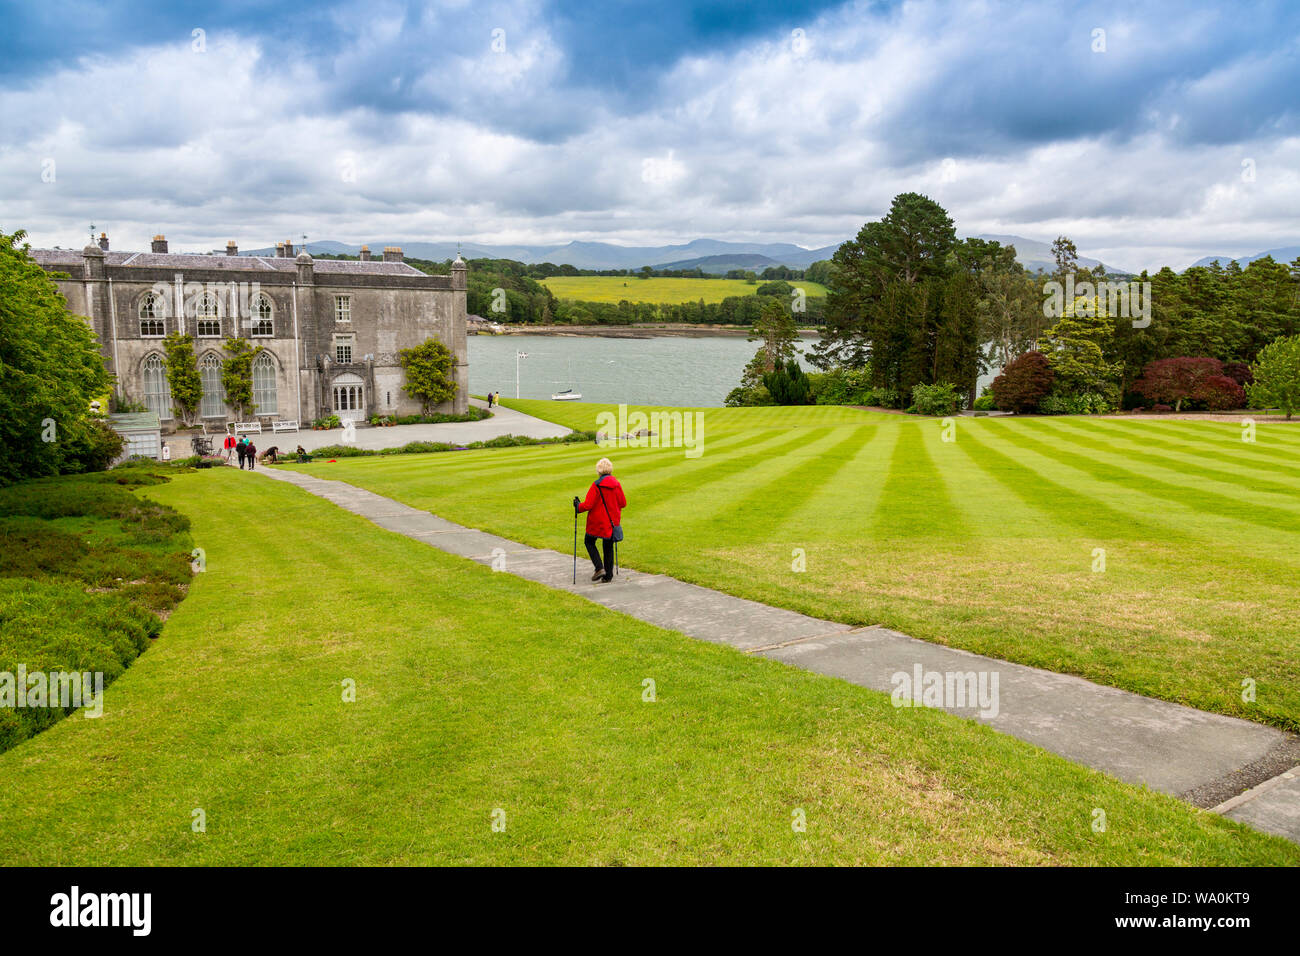 L'imposante maison de campagne de Plas Newydd se trouve sur les rives de la Détroit de Menai, Anglesey, Pays de Galles, Royaume-Uni Banque D'Images